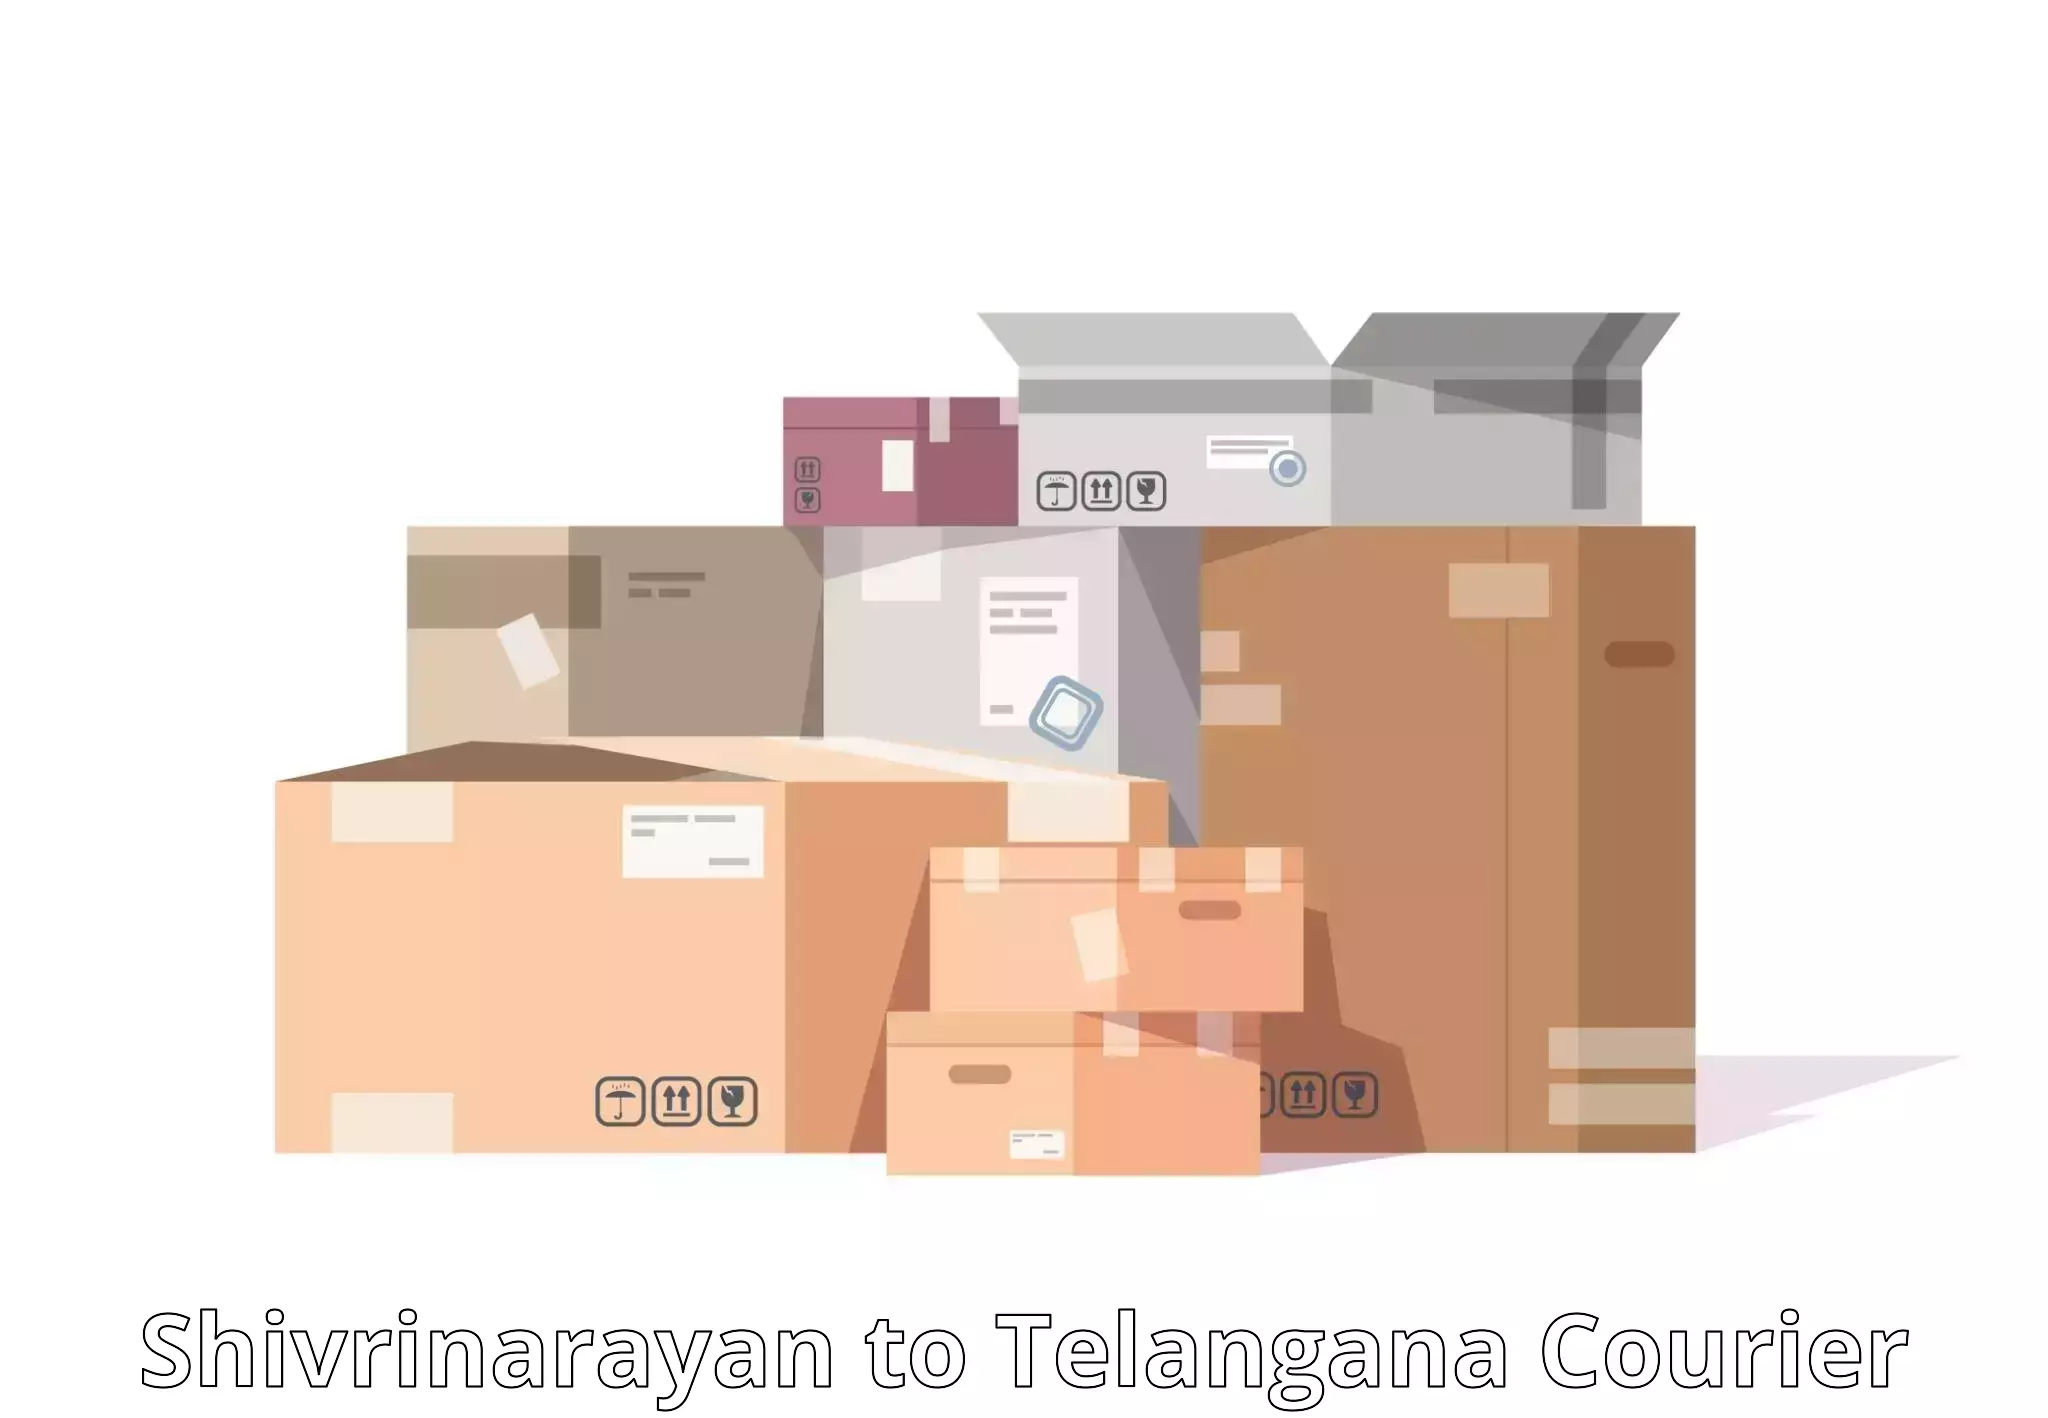 Courier service comparison in Shivrinarayan to Tandur